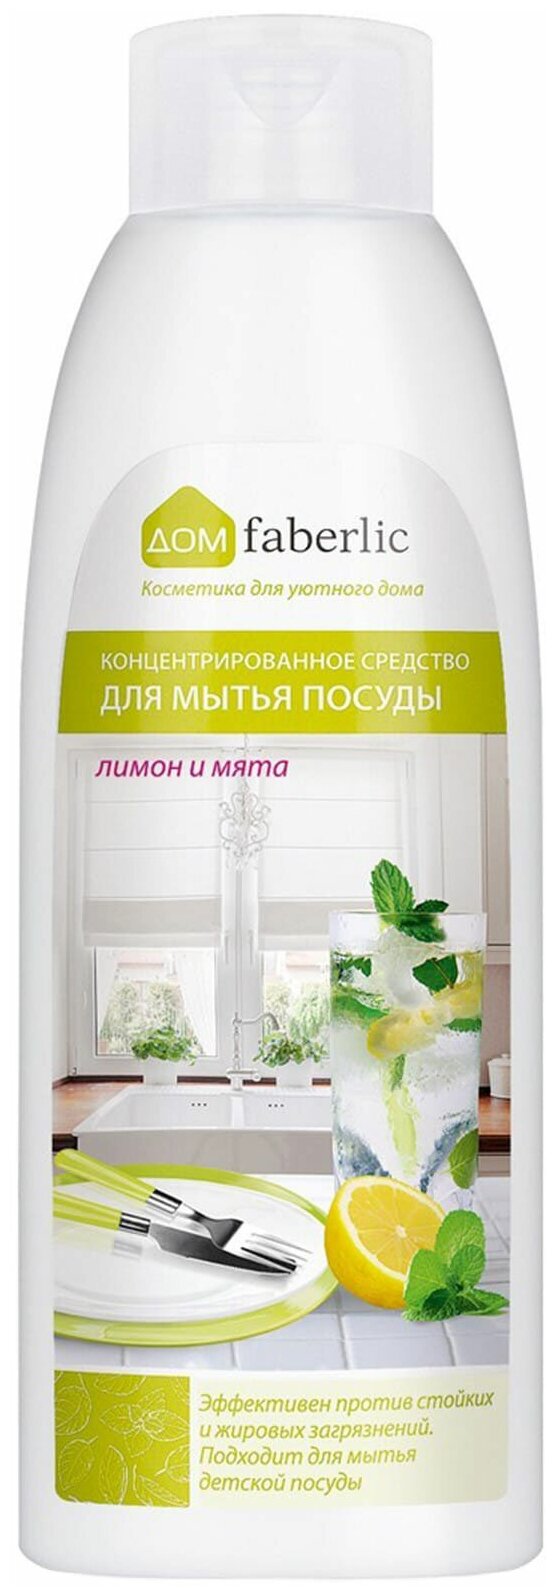 Faberlic Концентрированное средство для мытья посуды Лимон и мята, 0.5 л, 0.5 кг